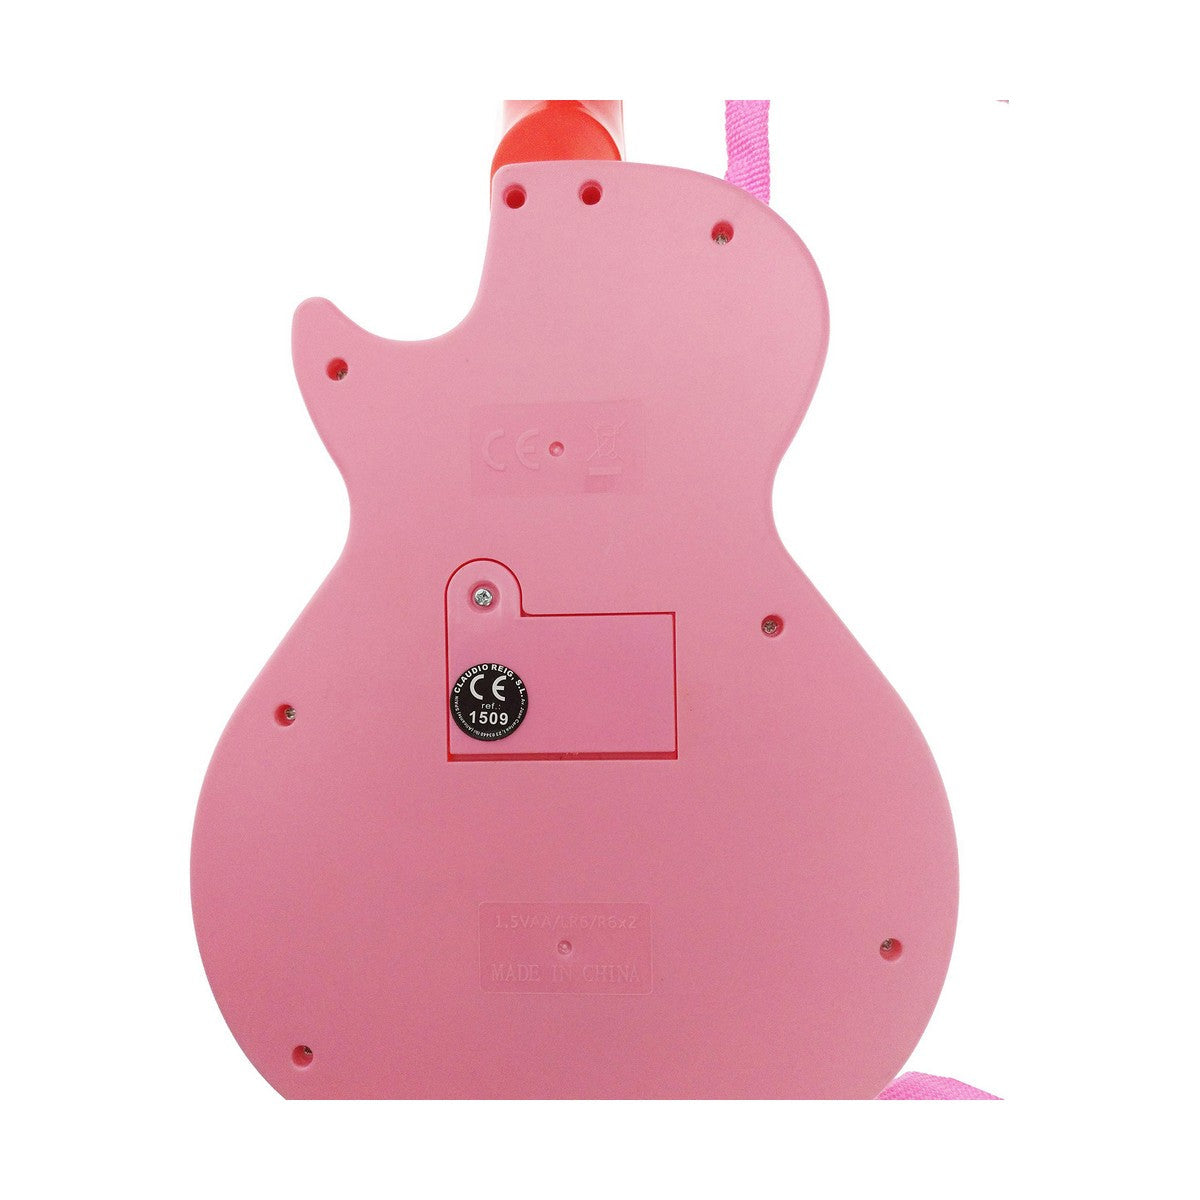 Musikset Hello Kitty Rosa-Leksaker och spel, Barns Musikinstrument-Hello Kitty-peaceofhome.se